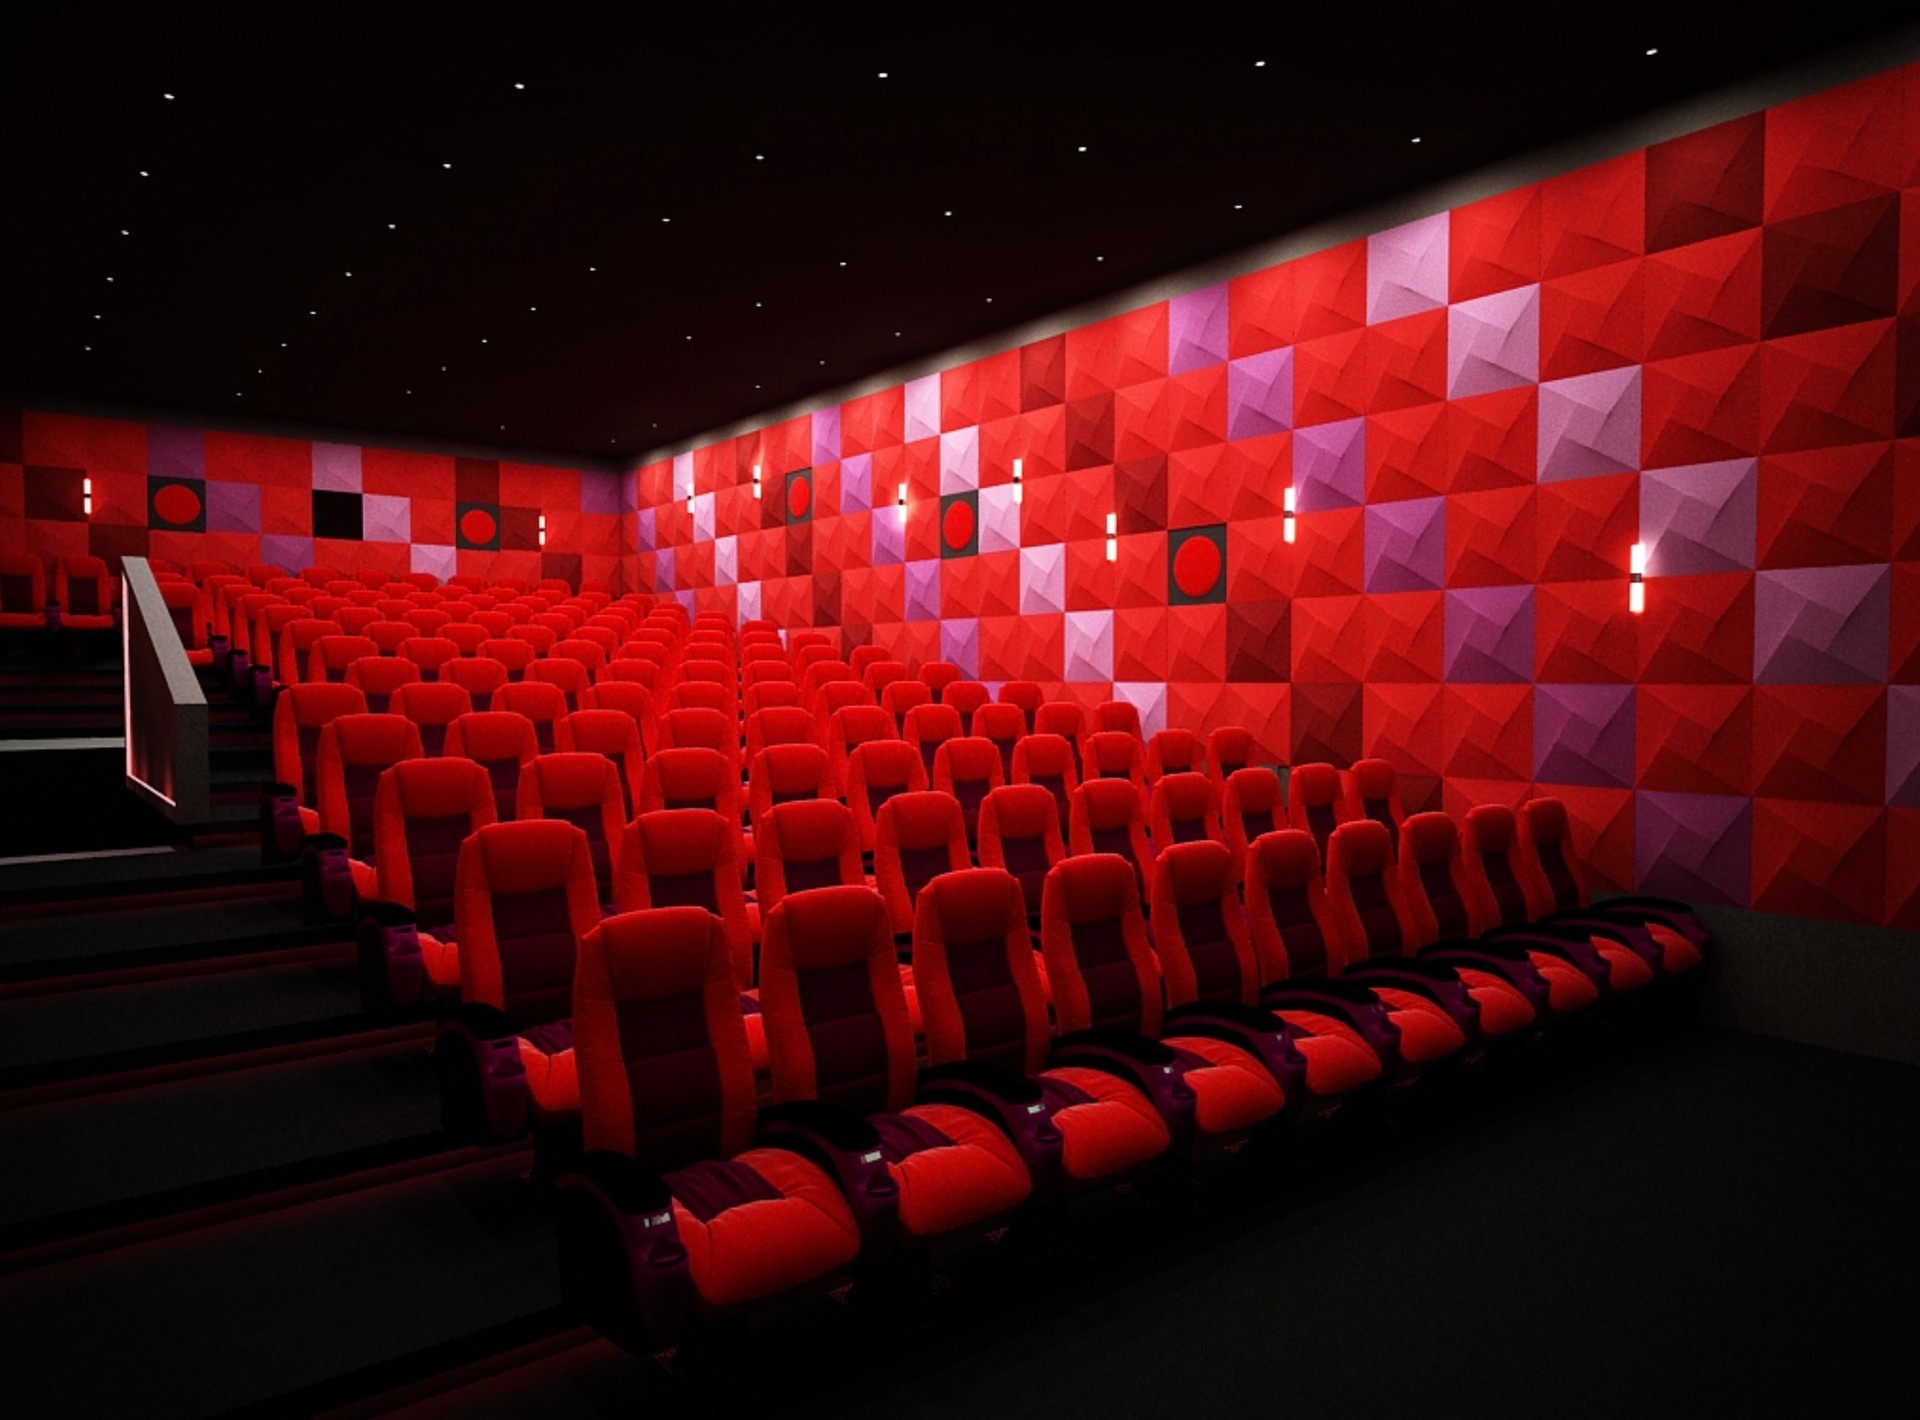 Theater seating. Кресла в кинотеатре. Красные кресла в кинотеатре. Кинотеатр без сидушек. Кинотеатр в темноте.